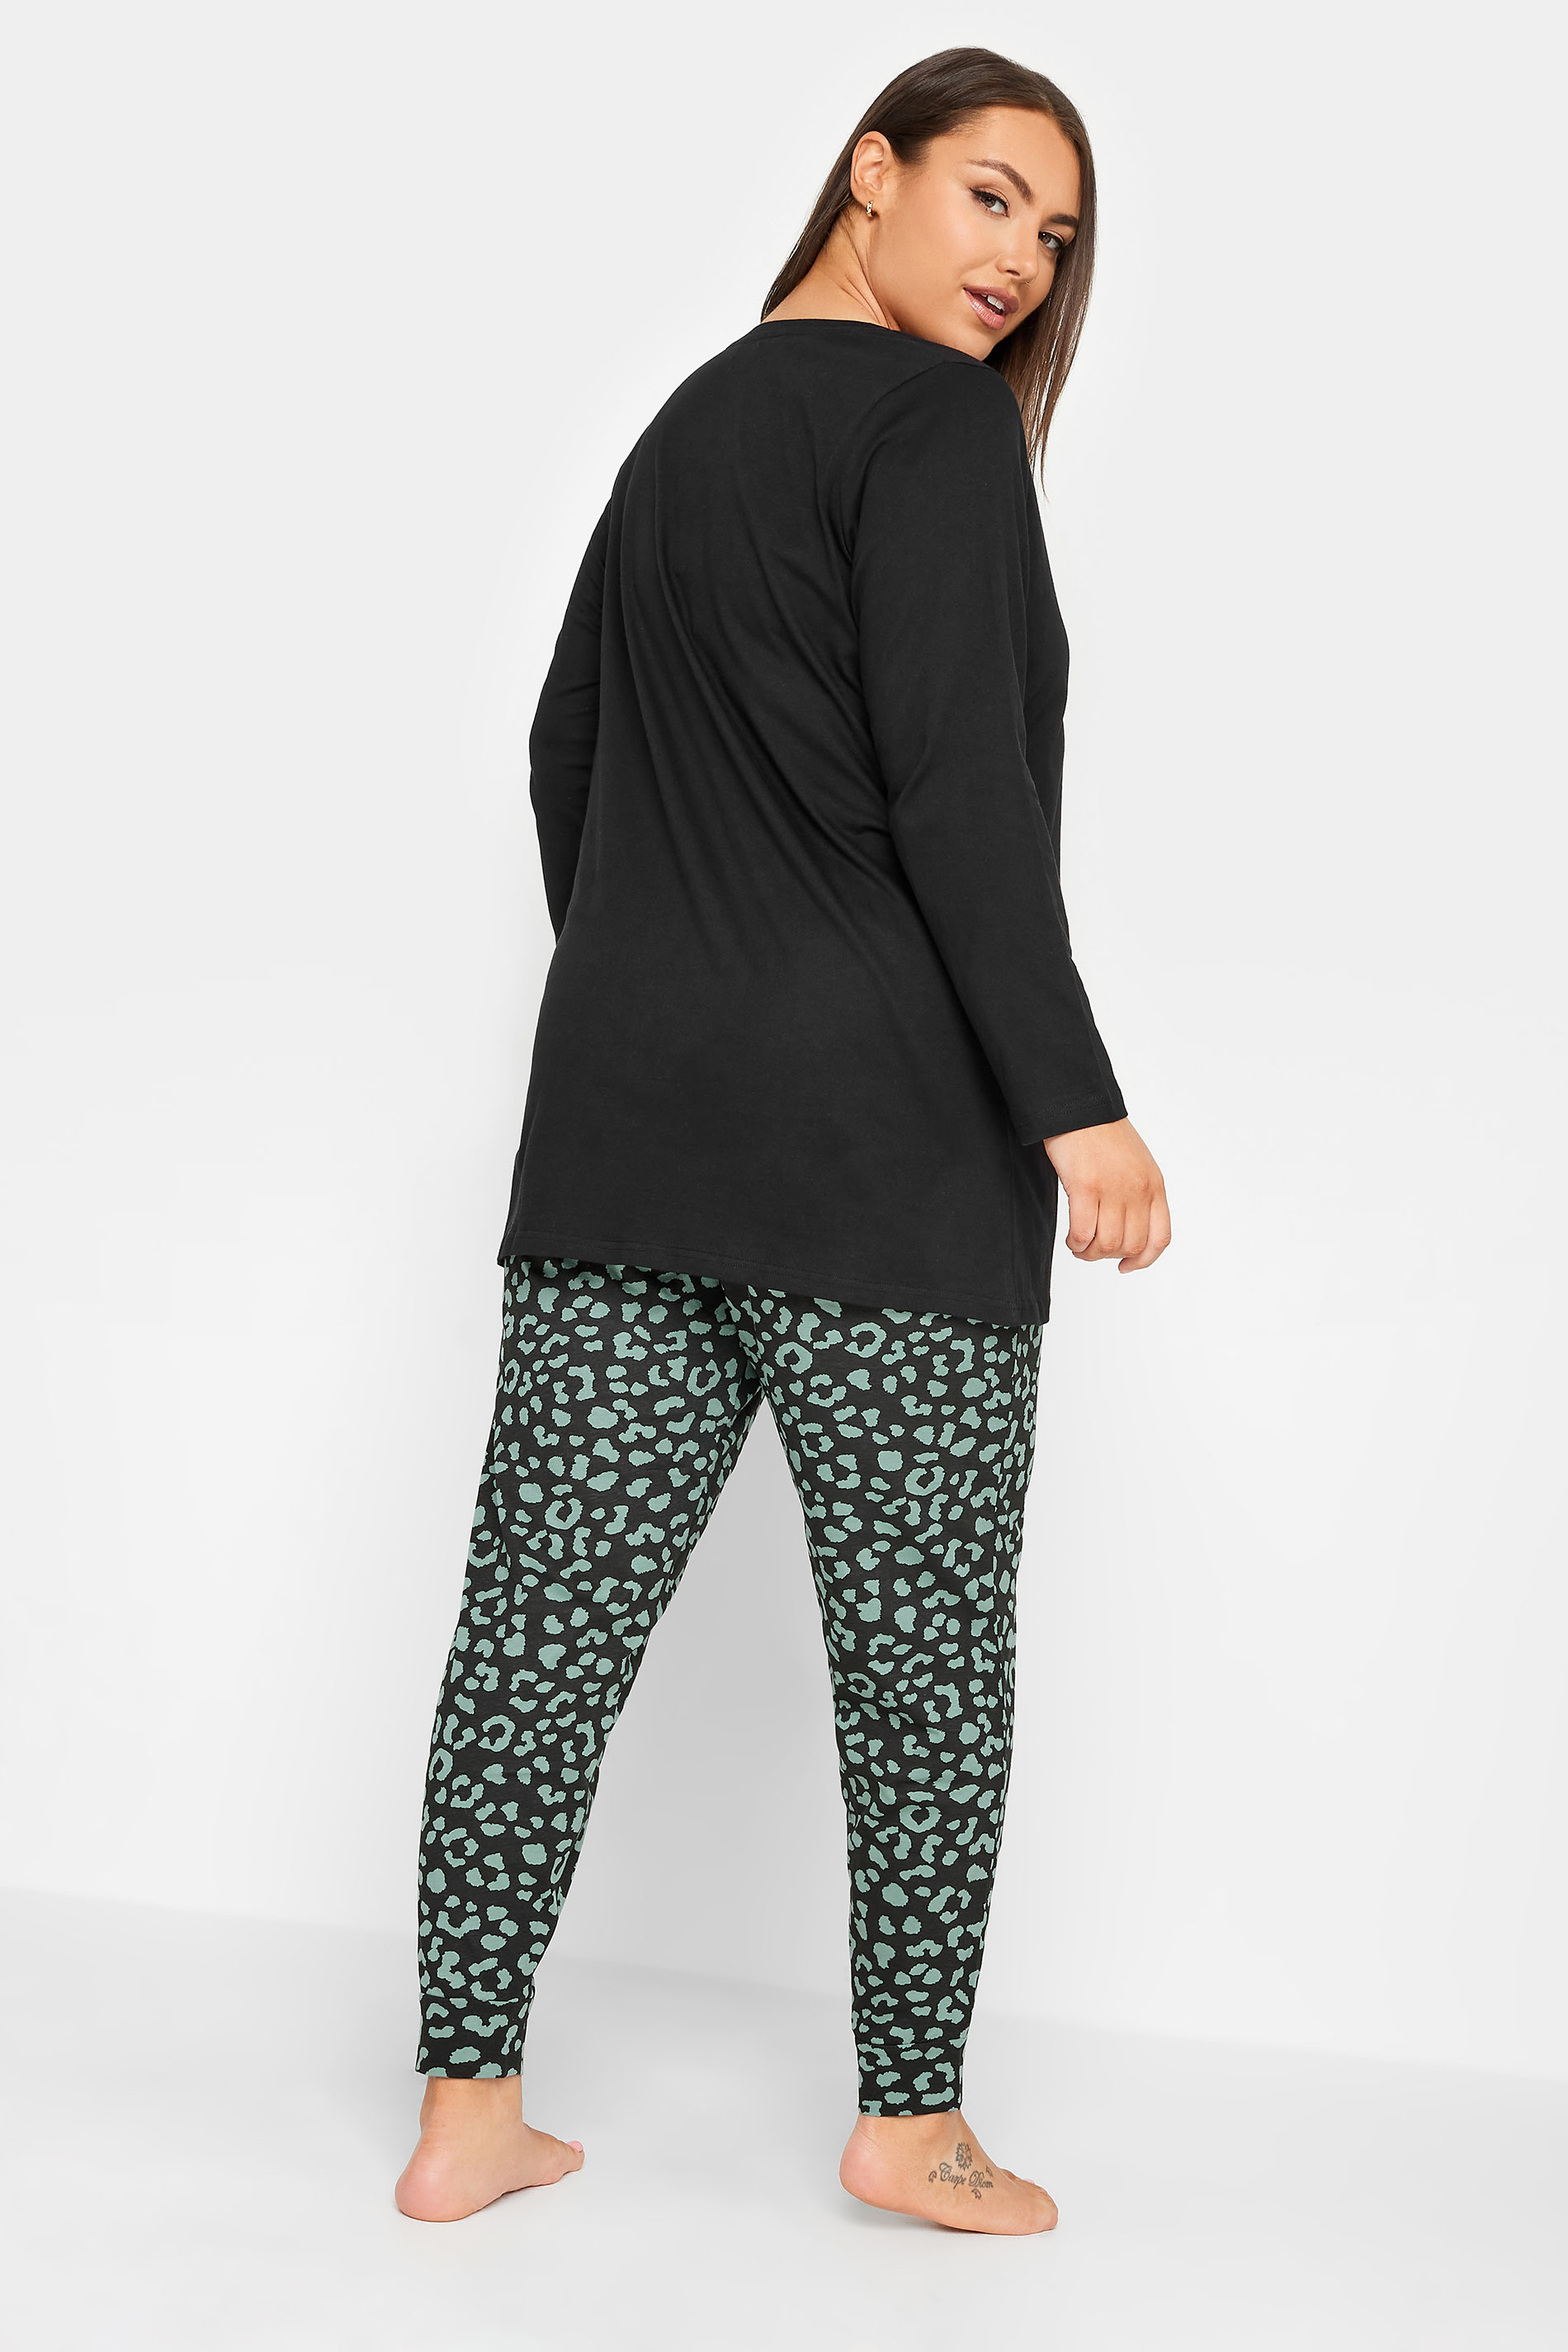 YOURS Plus Size Black Animal Print Long Sleeve Pyjama Set | Yours Clothing 3